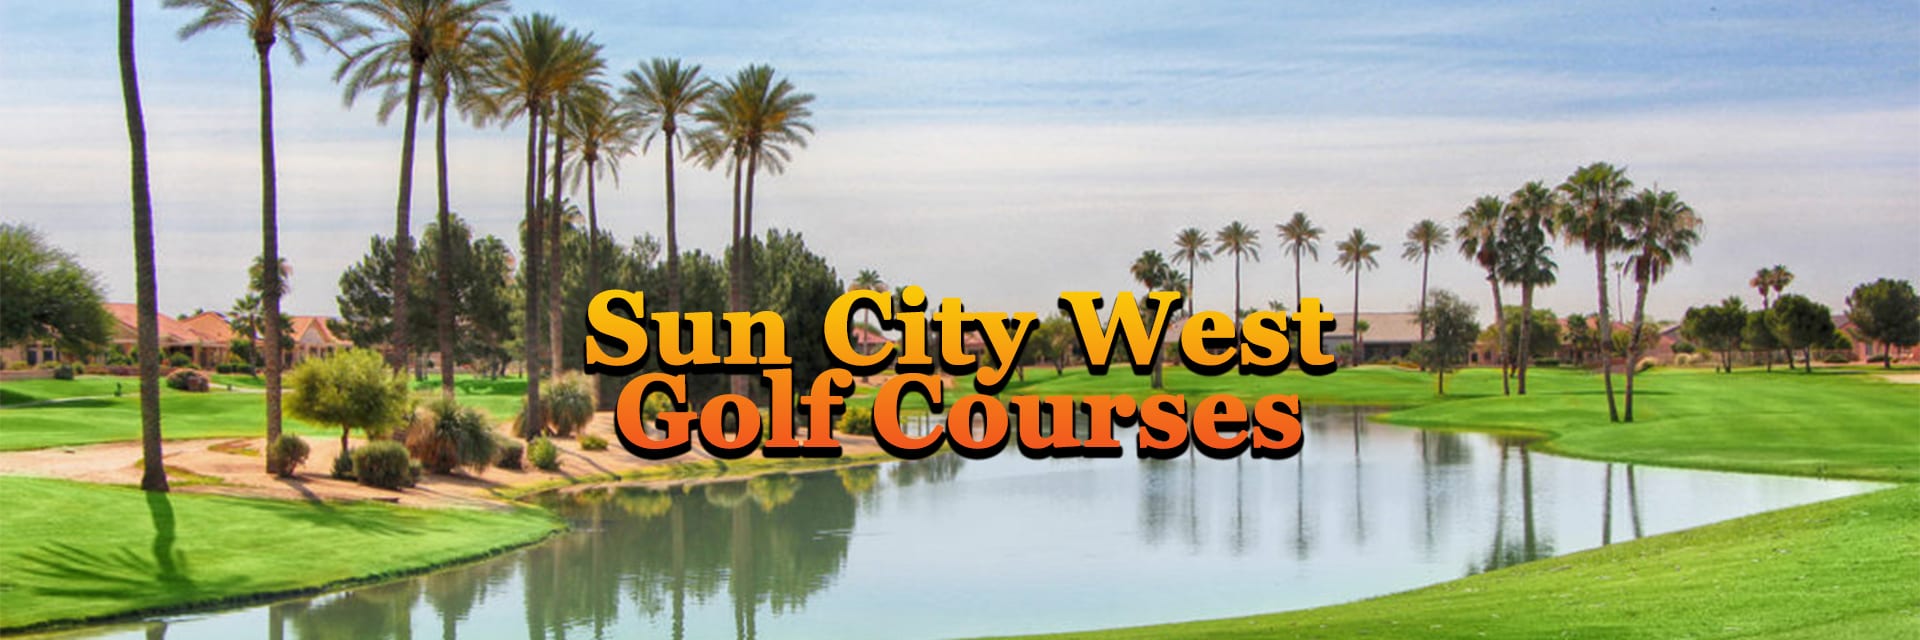 Sun City West AZ Golf Courses Home Page